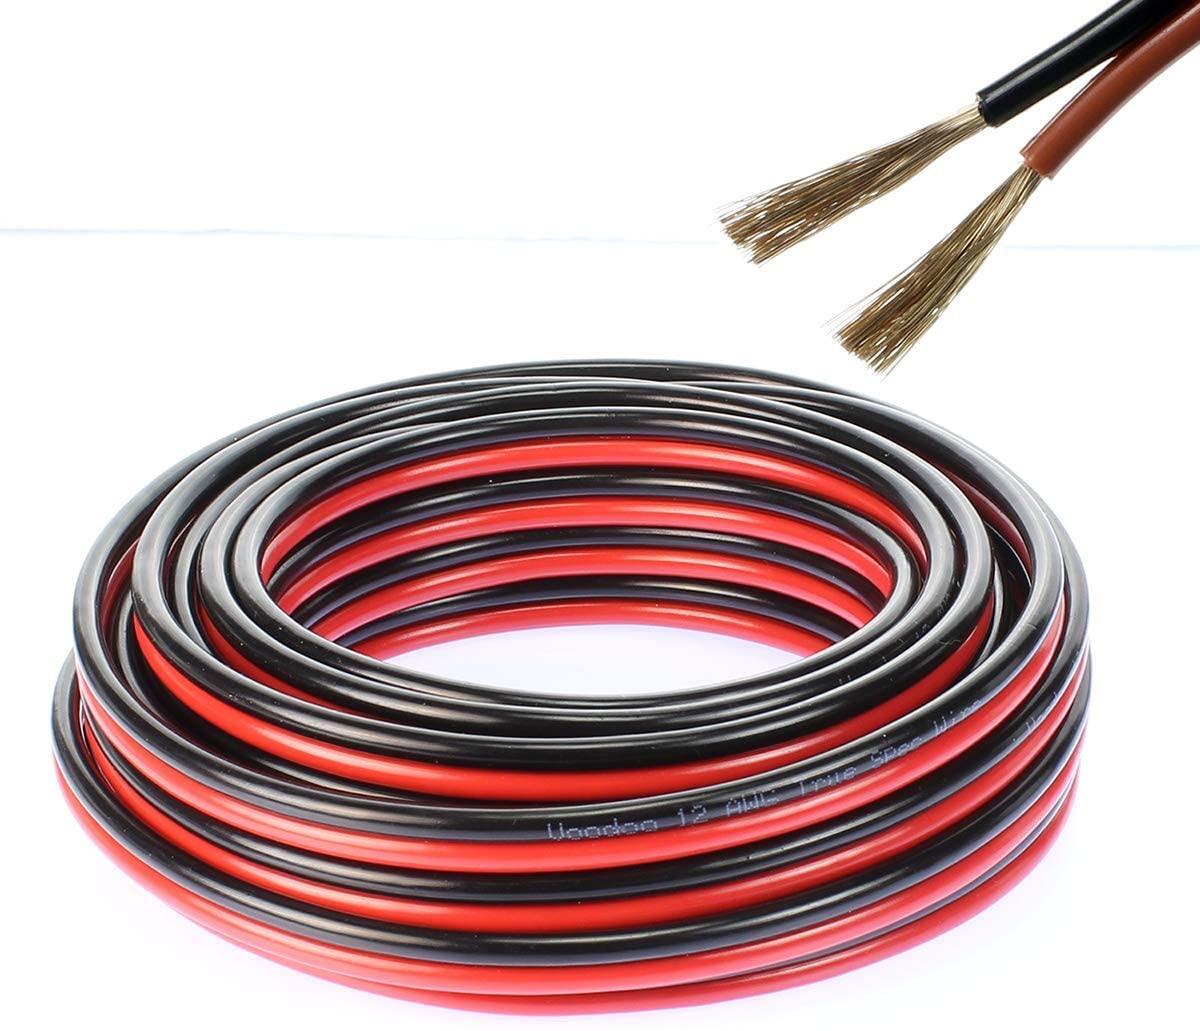 สายไฟ แดงดำ 15awg (1.5 mm²) สายลำโพง สายไฟคู่ สายคู่ electrical wire cable เครื่องเสียง รถยนต์ car a สี ชุด 10 เมตร สี ชุด 10 เมตร